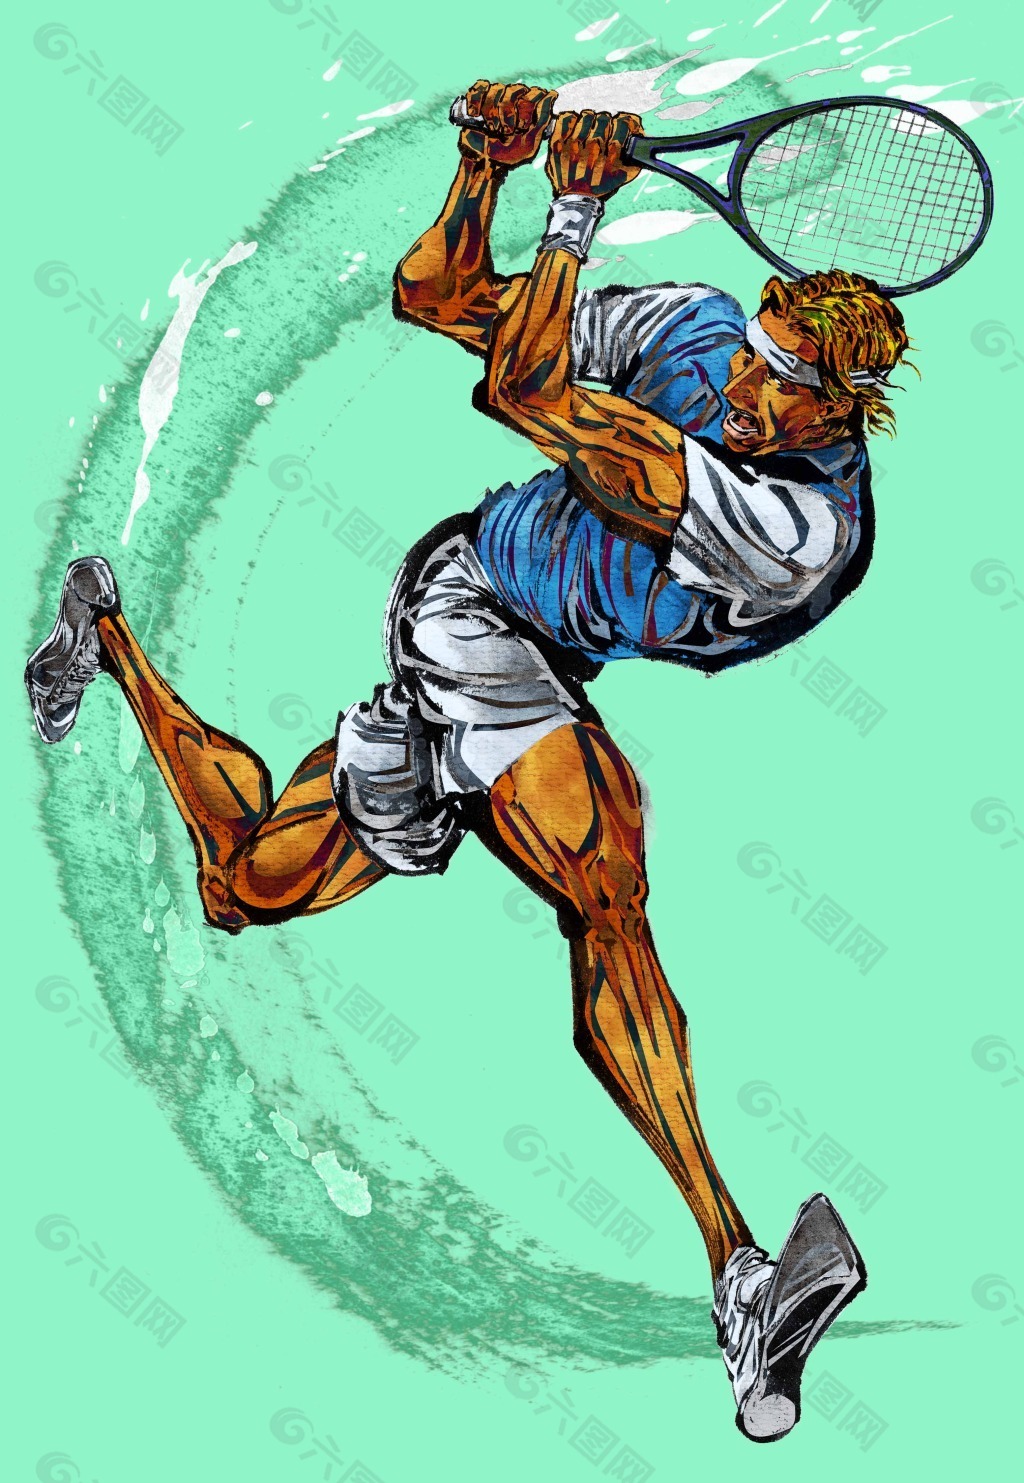 男子网球的插画psd文件